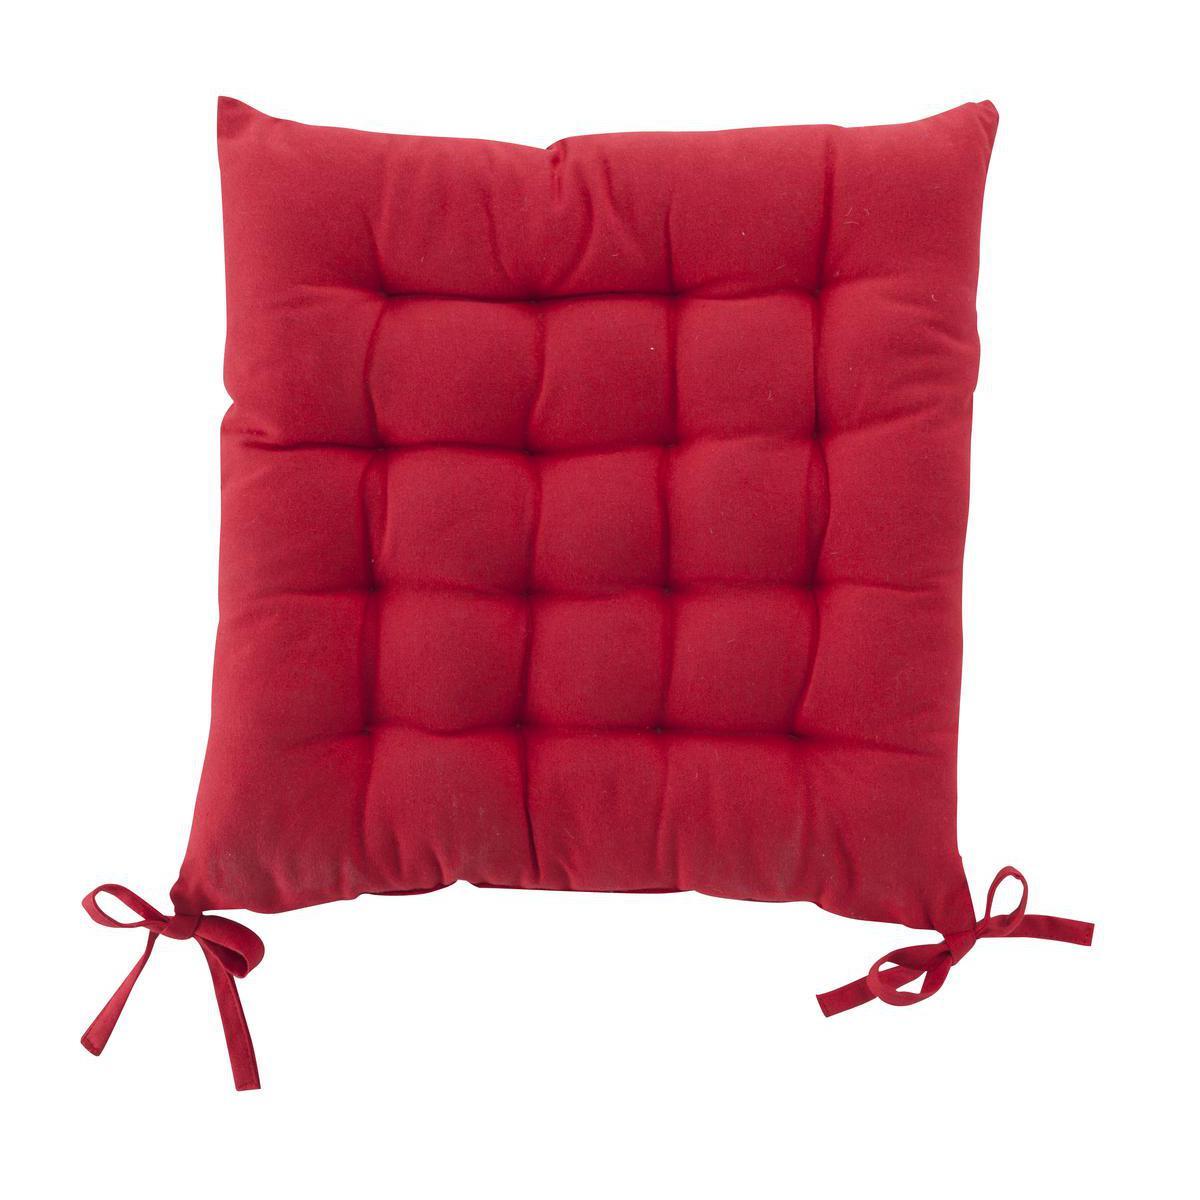 Galette de chaise bicolore - 100 % coton - 40 x 40 cm - Rouge et noir